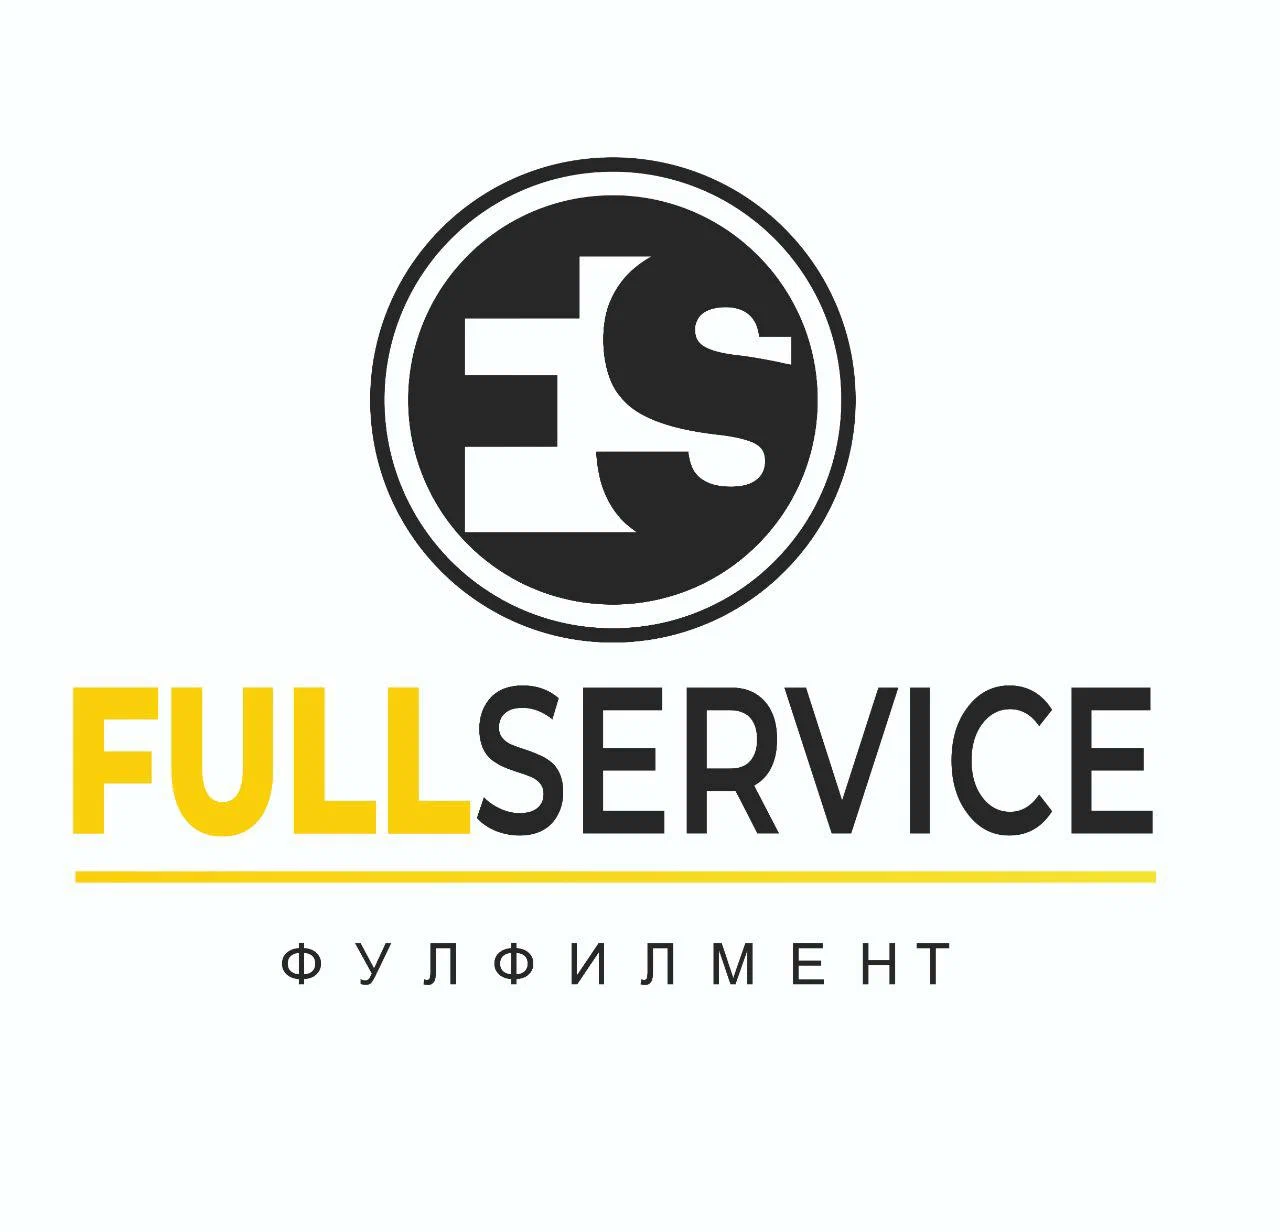 Логотип fullservice Чебоксары